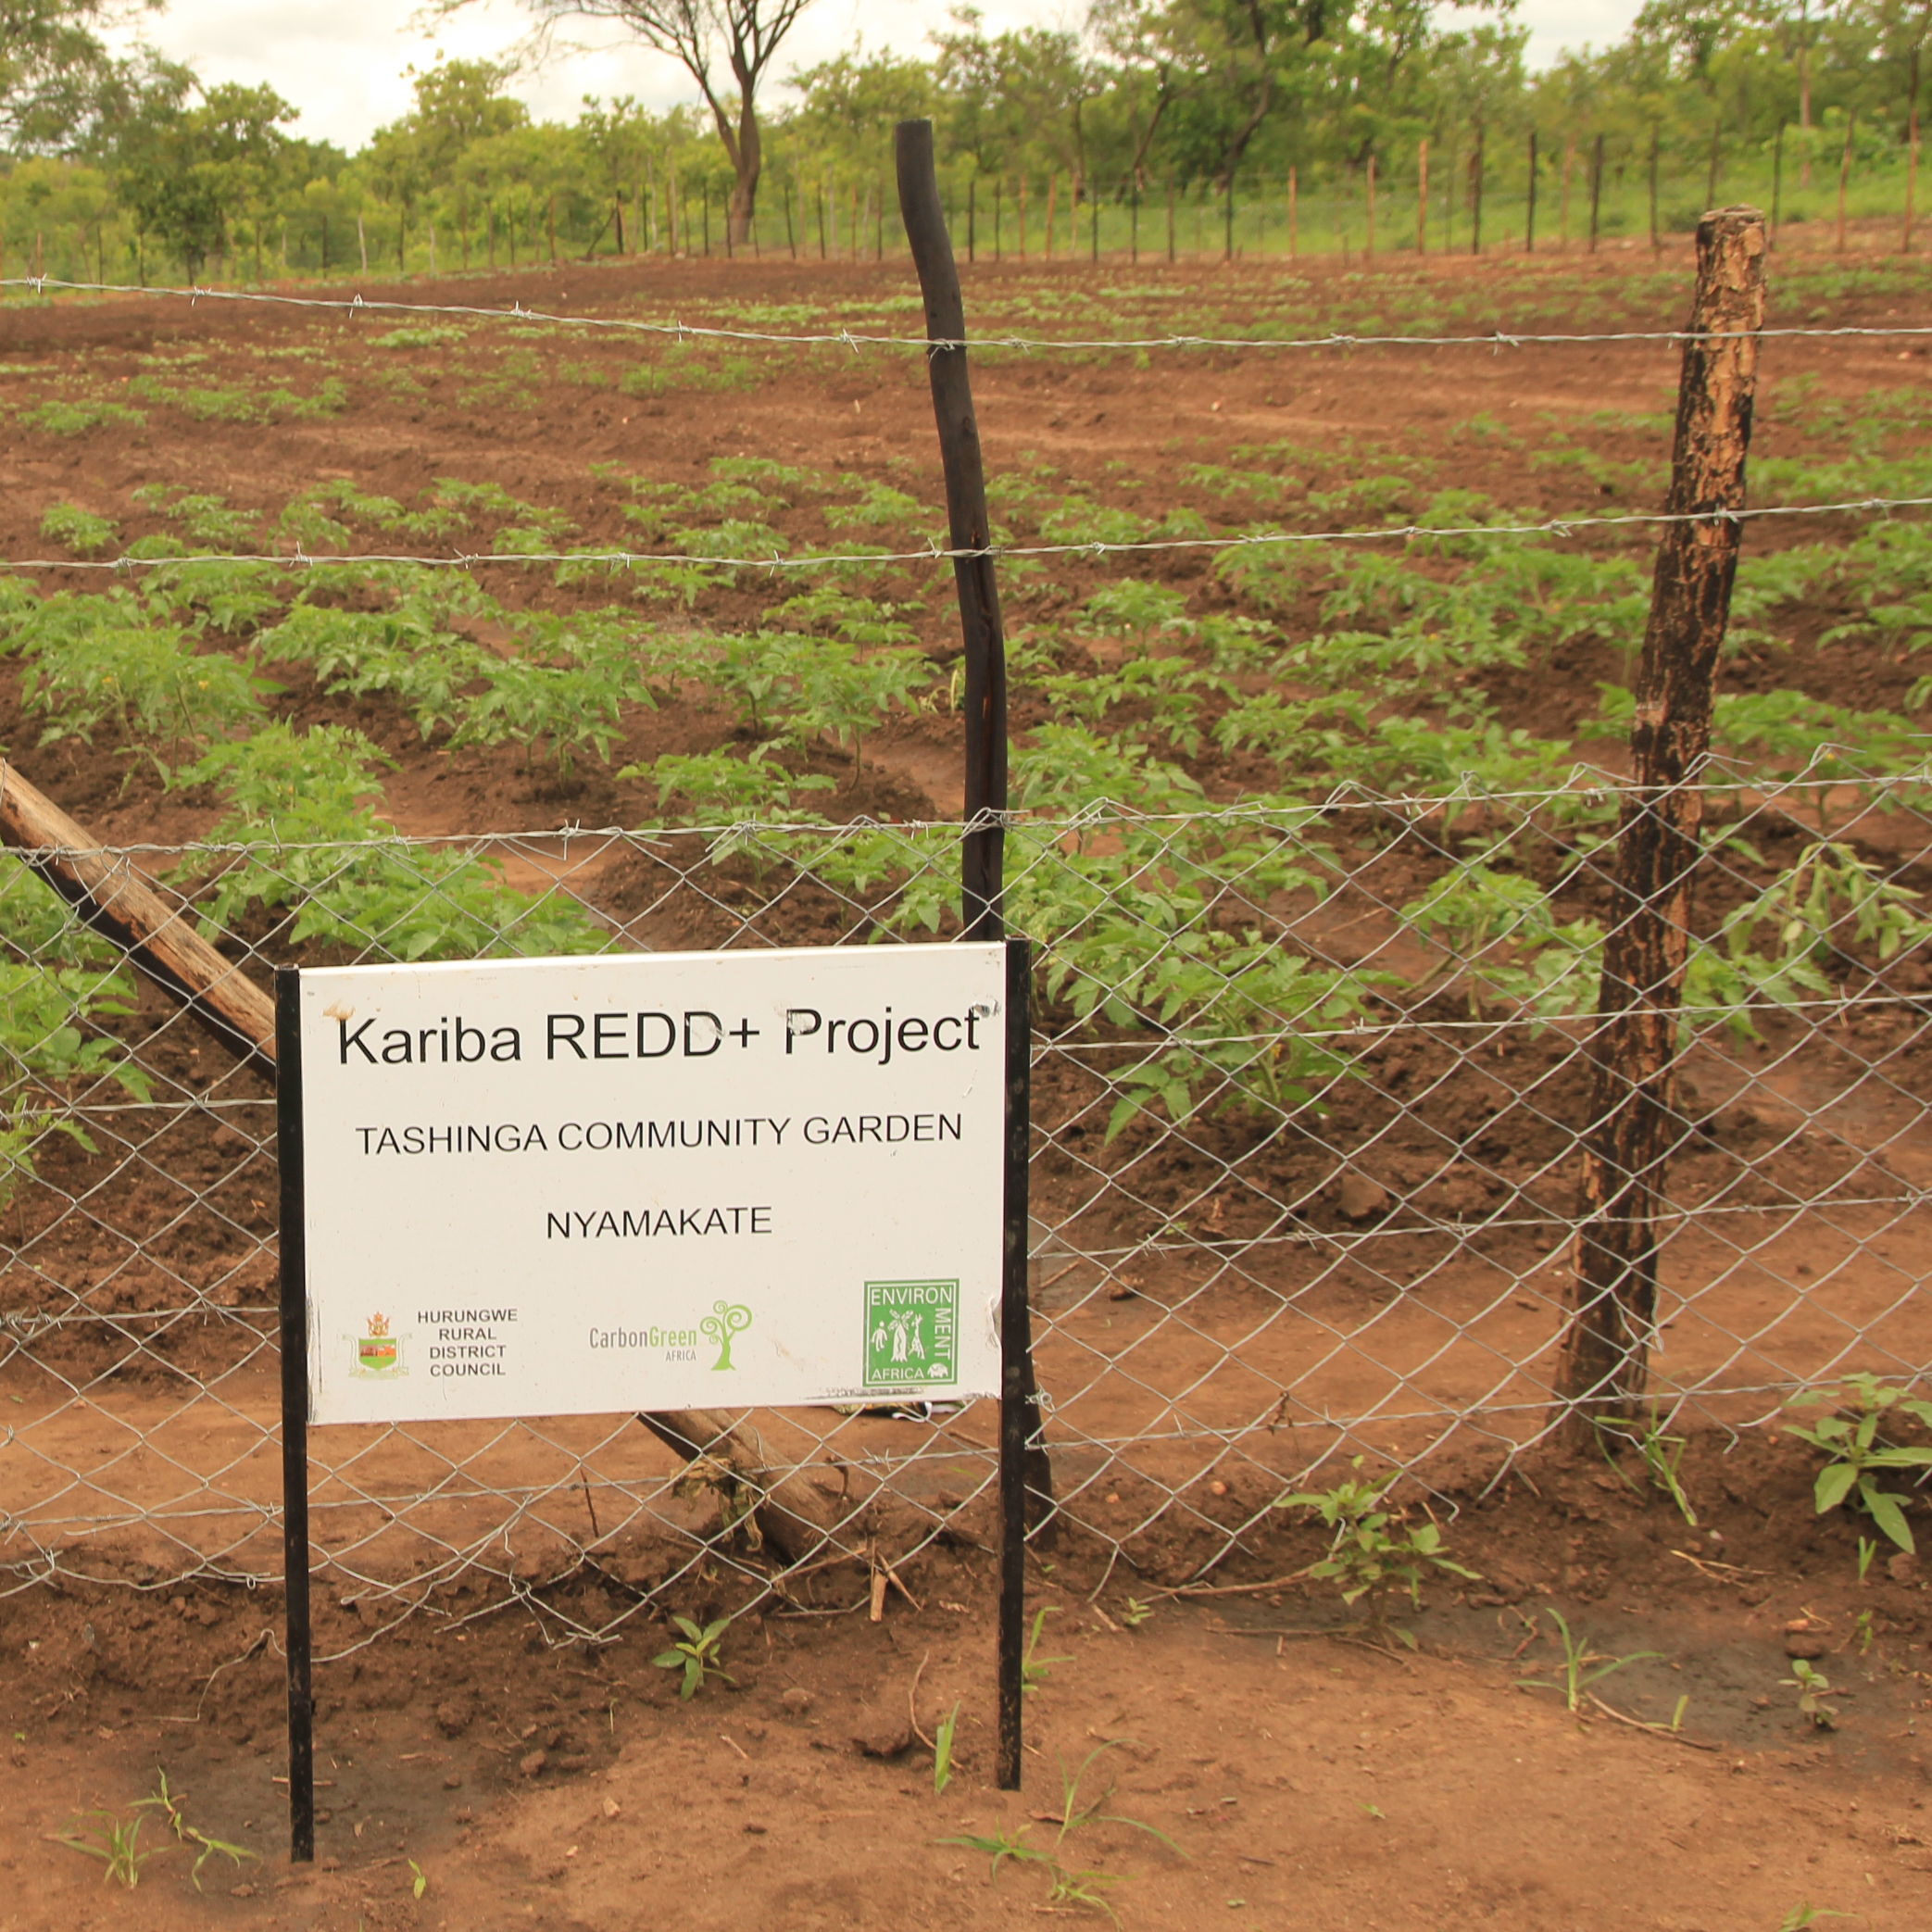 Reforestación como parte del proyecto Kariba REDD+